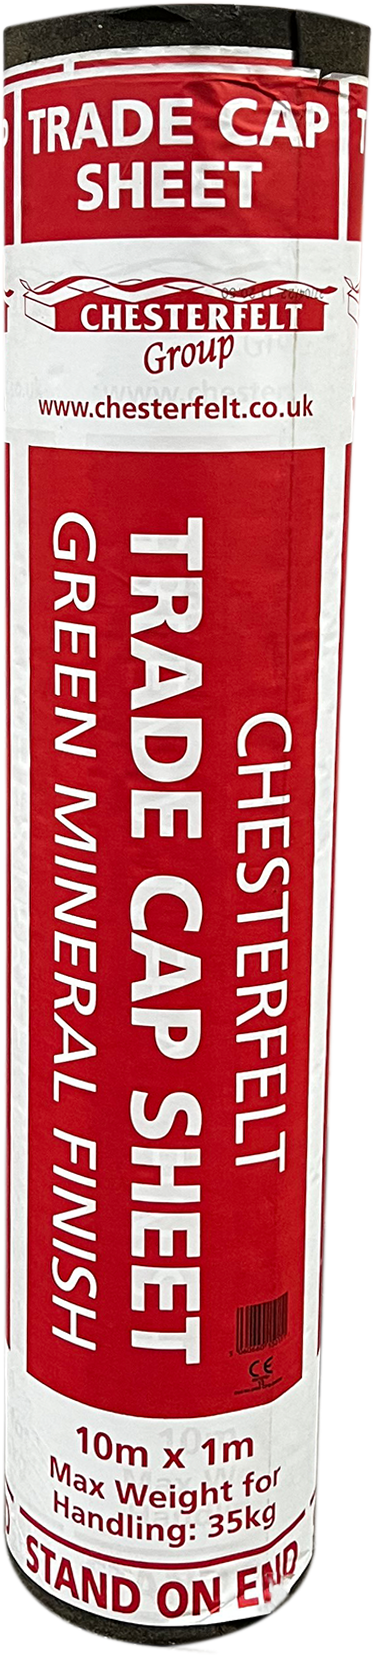 Chesterfelt Trade Cap Sheet